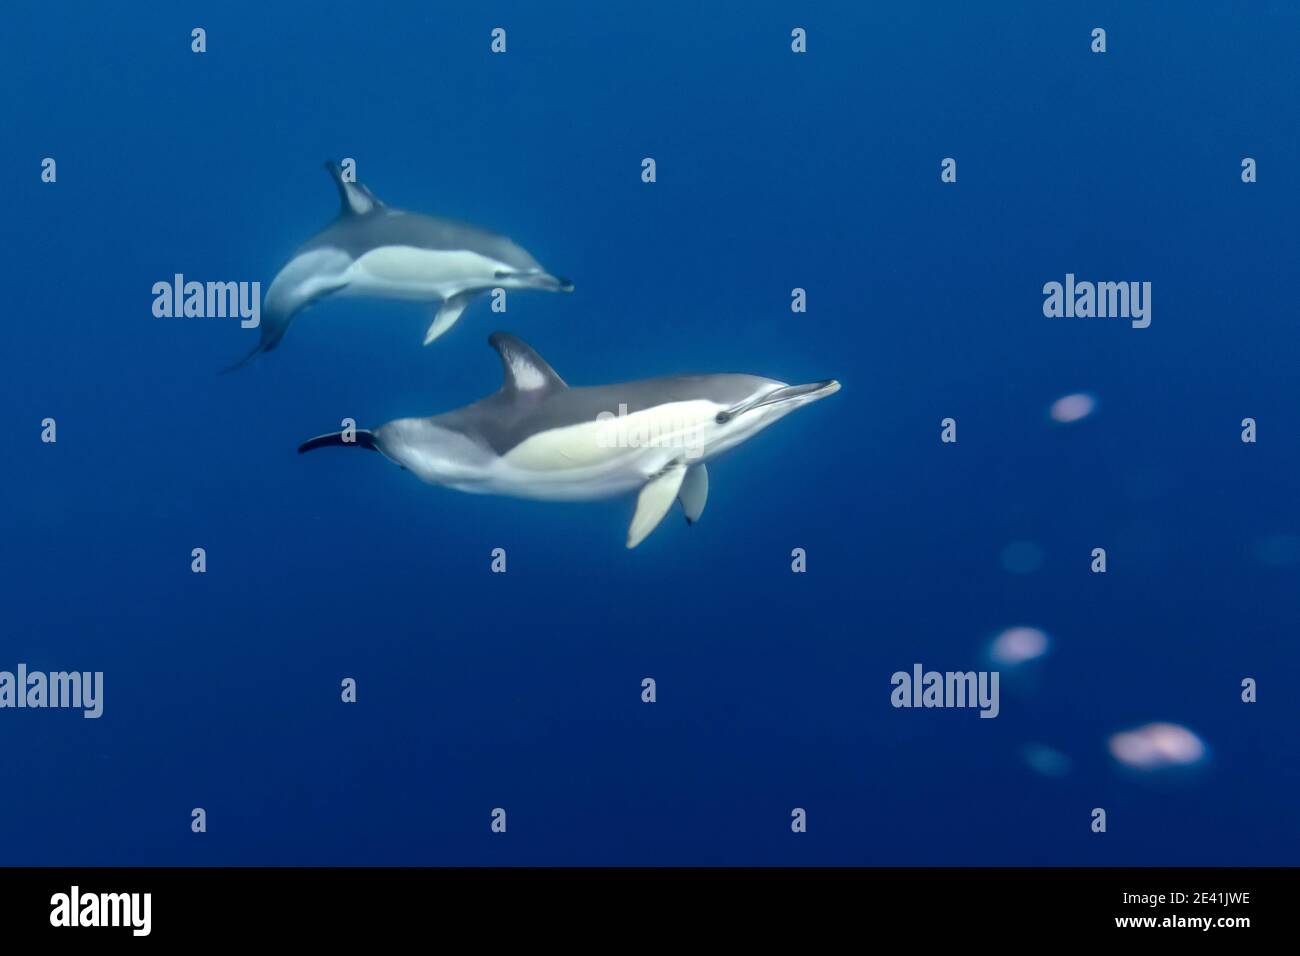 Dauphin commun, dauphin commun à bec court, dauphin à dos de selle (ed), dauphin en croix (Delphinus delphis), deux dauphins nageant sous l'eau, à côté Banque D'Images